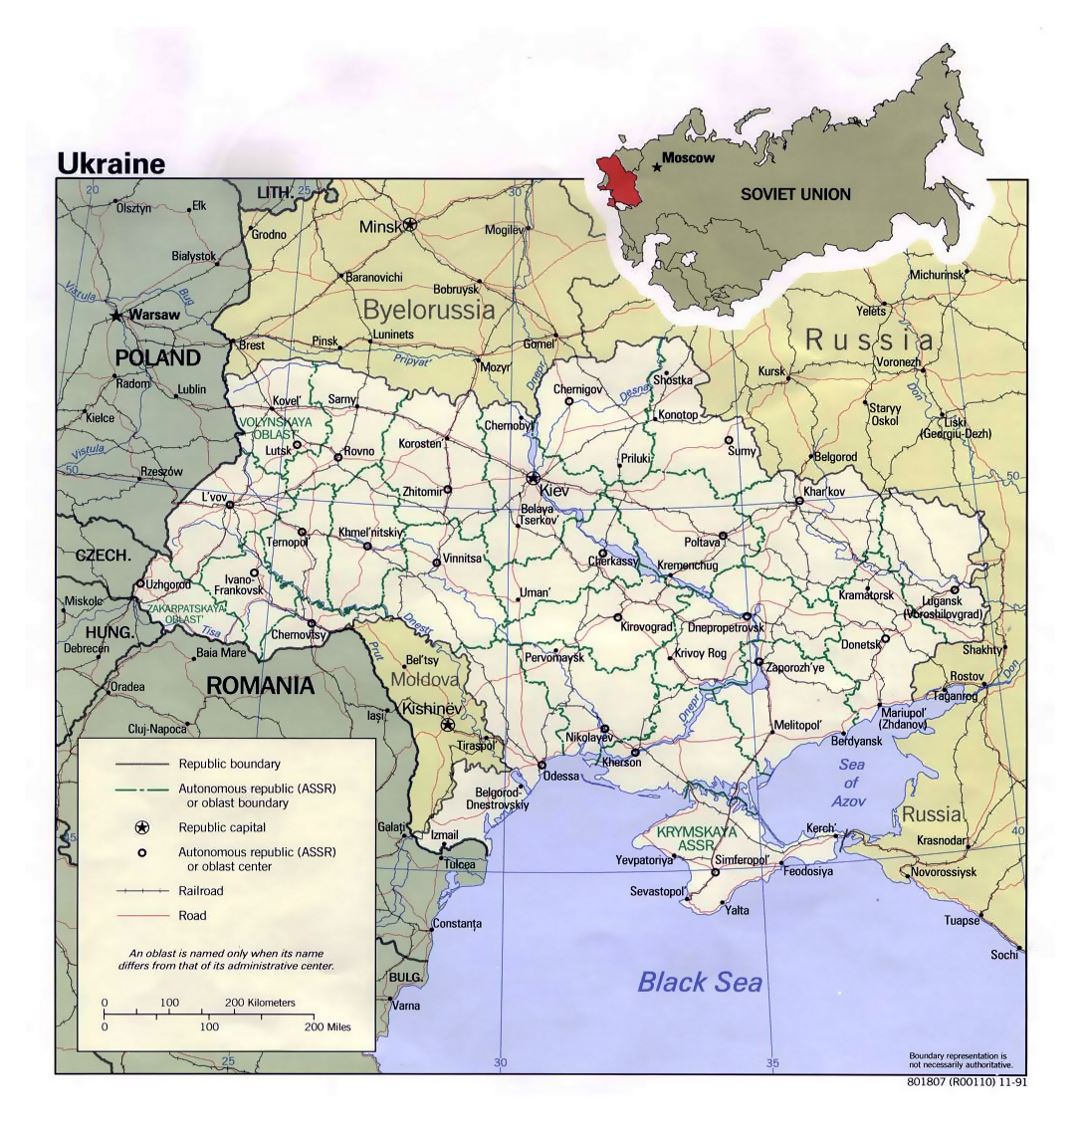 Детальная политическая и административная карта Украины с дорогами, железными дорогами и крупными городами - 1991